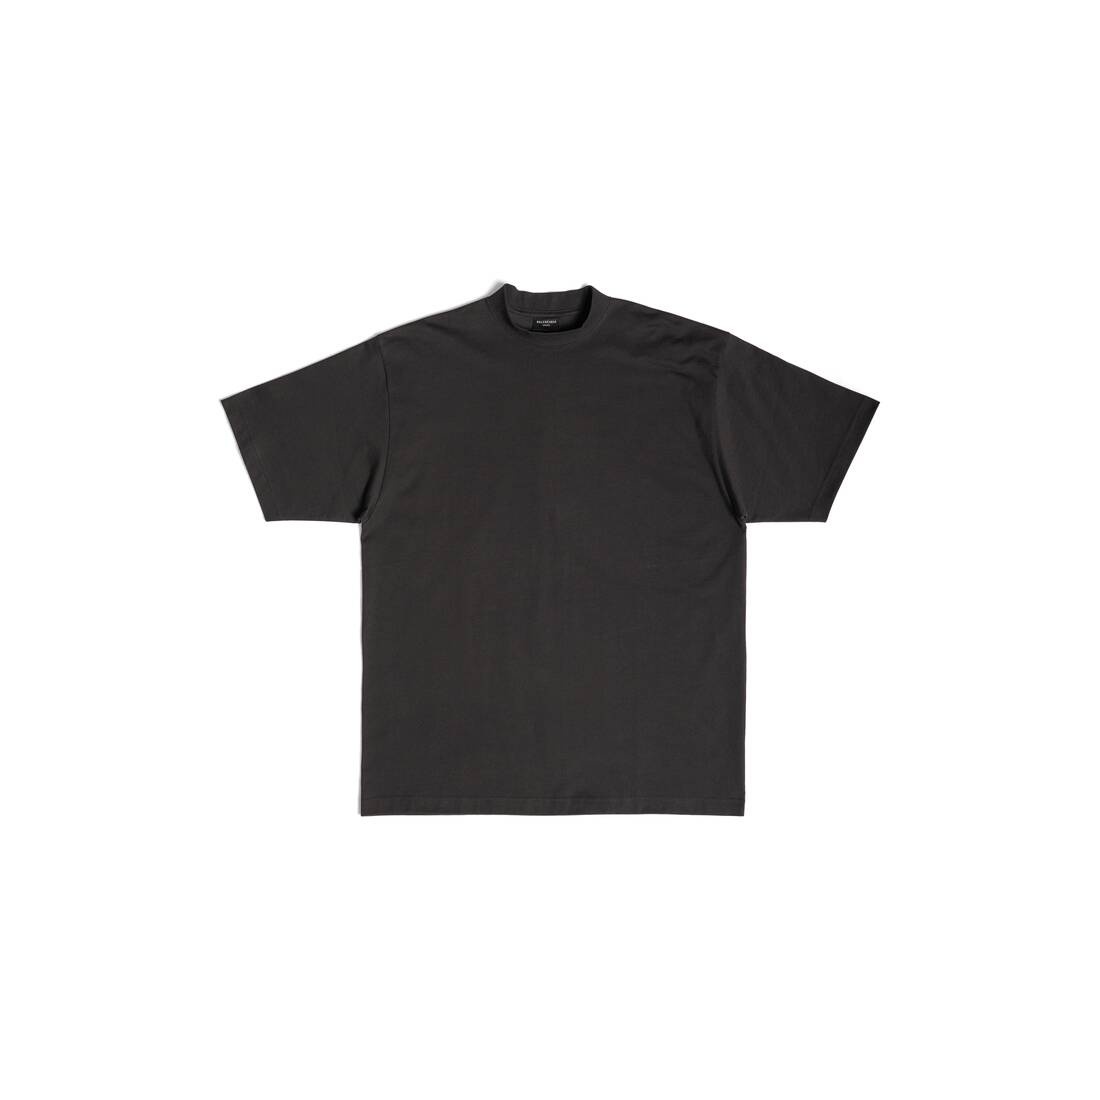 Bb Paris Strass T-shirt Medium Fit in Black Faded - 1